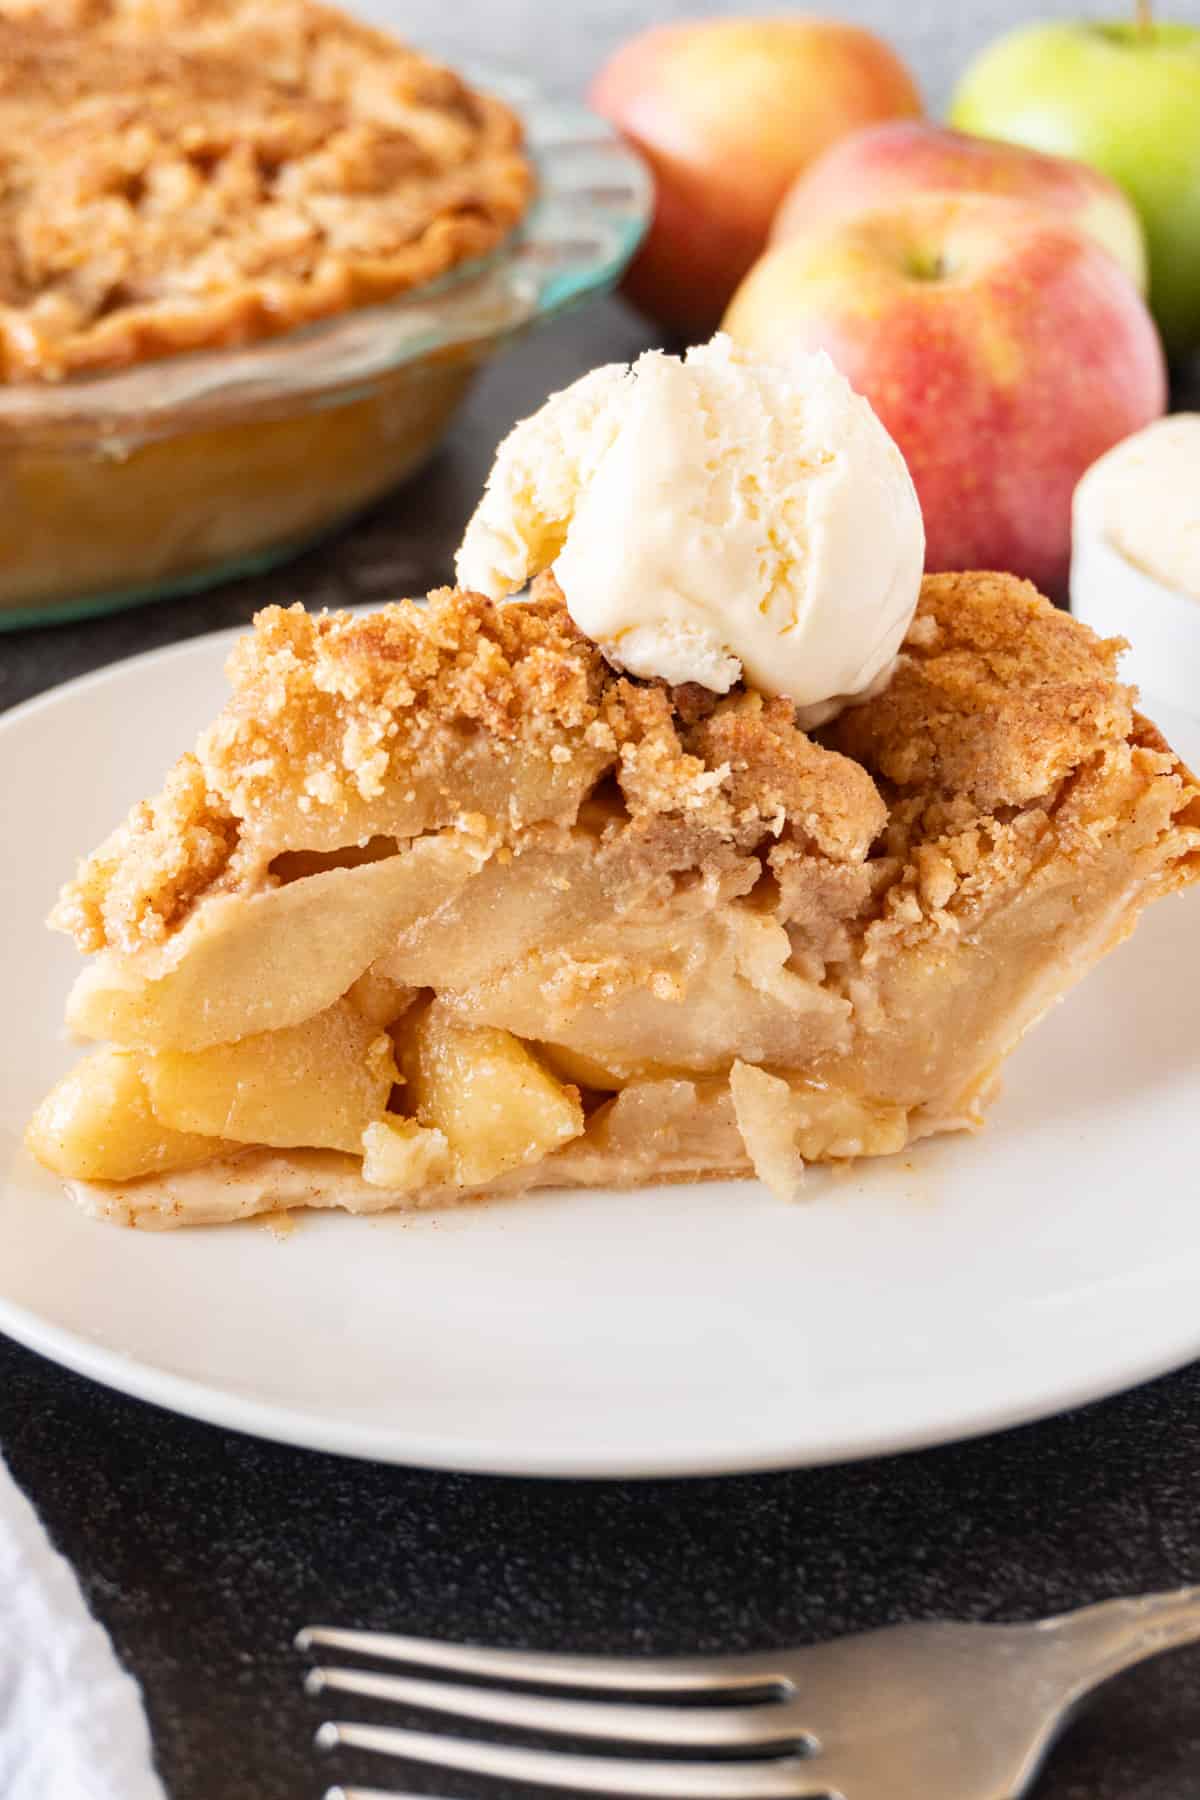 slice of apple pie with ice cream scoop on top